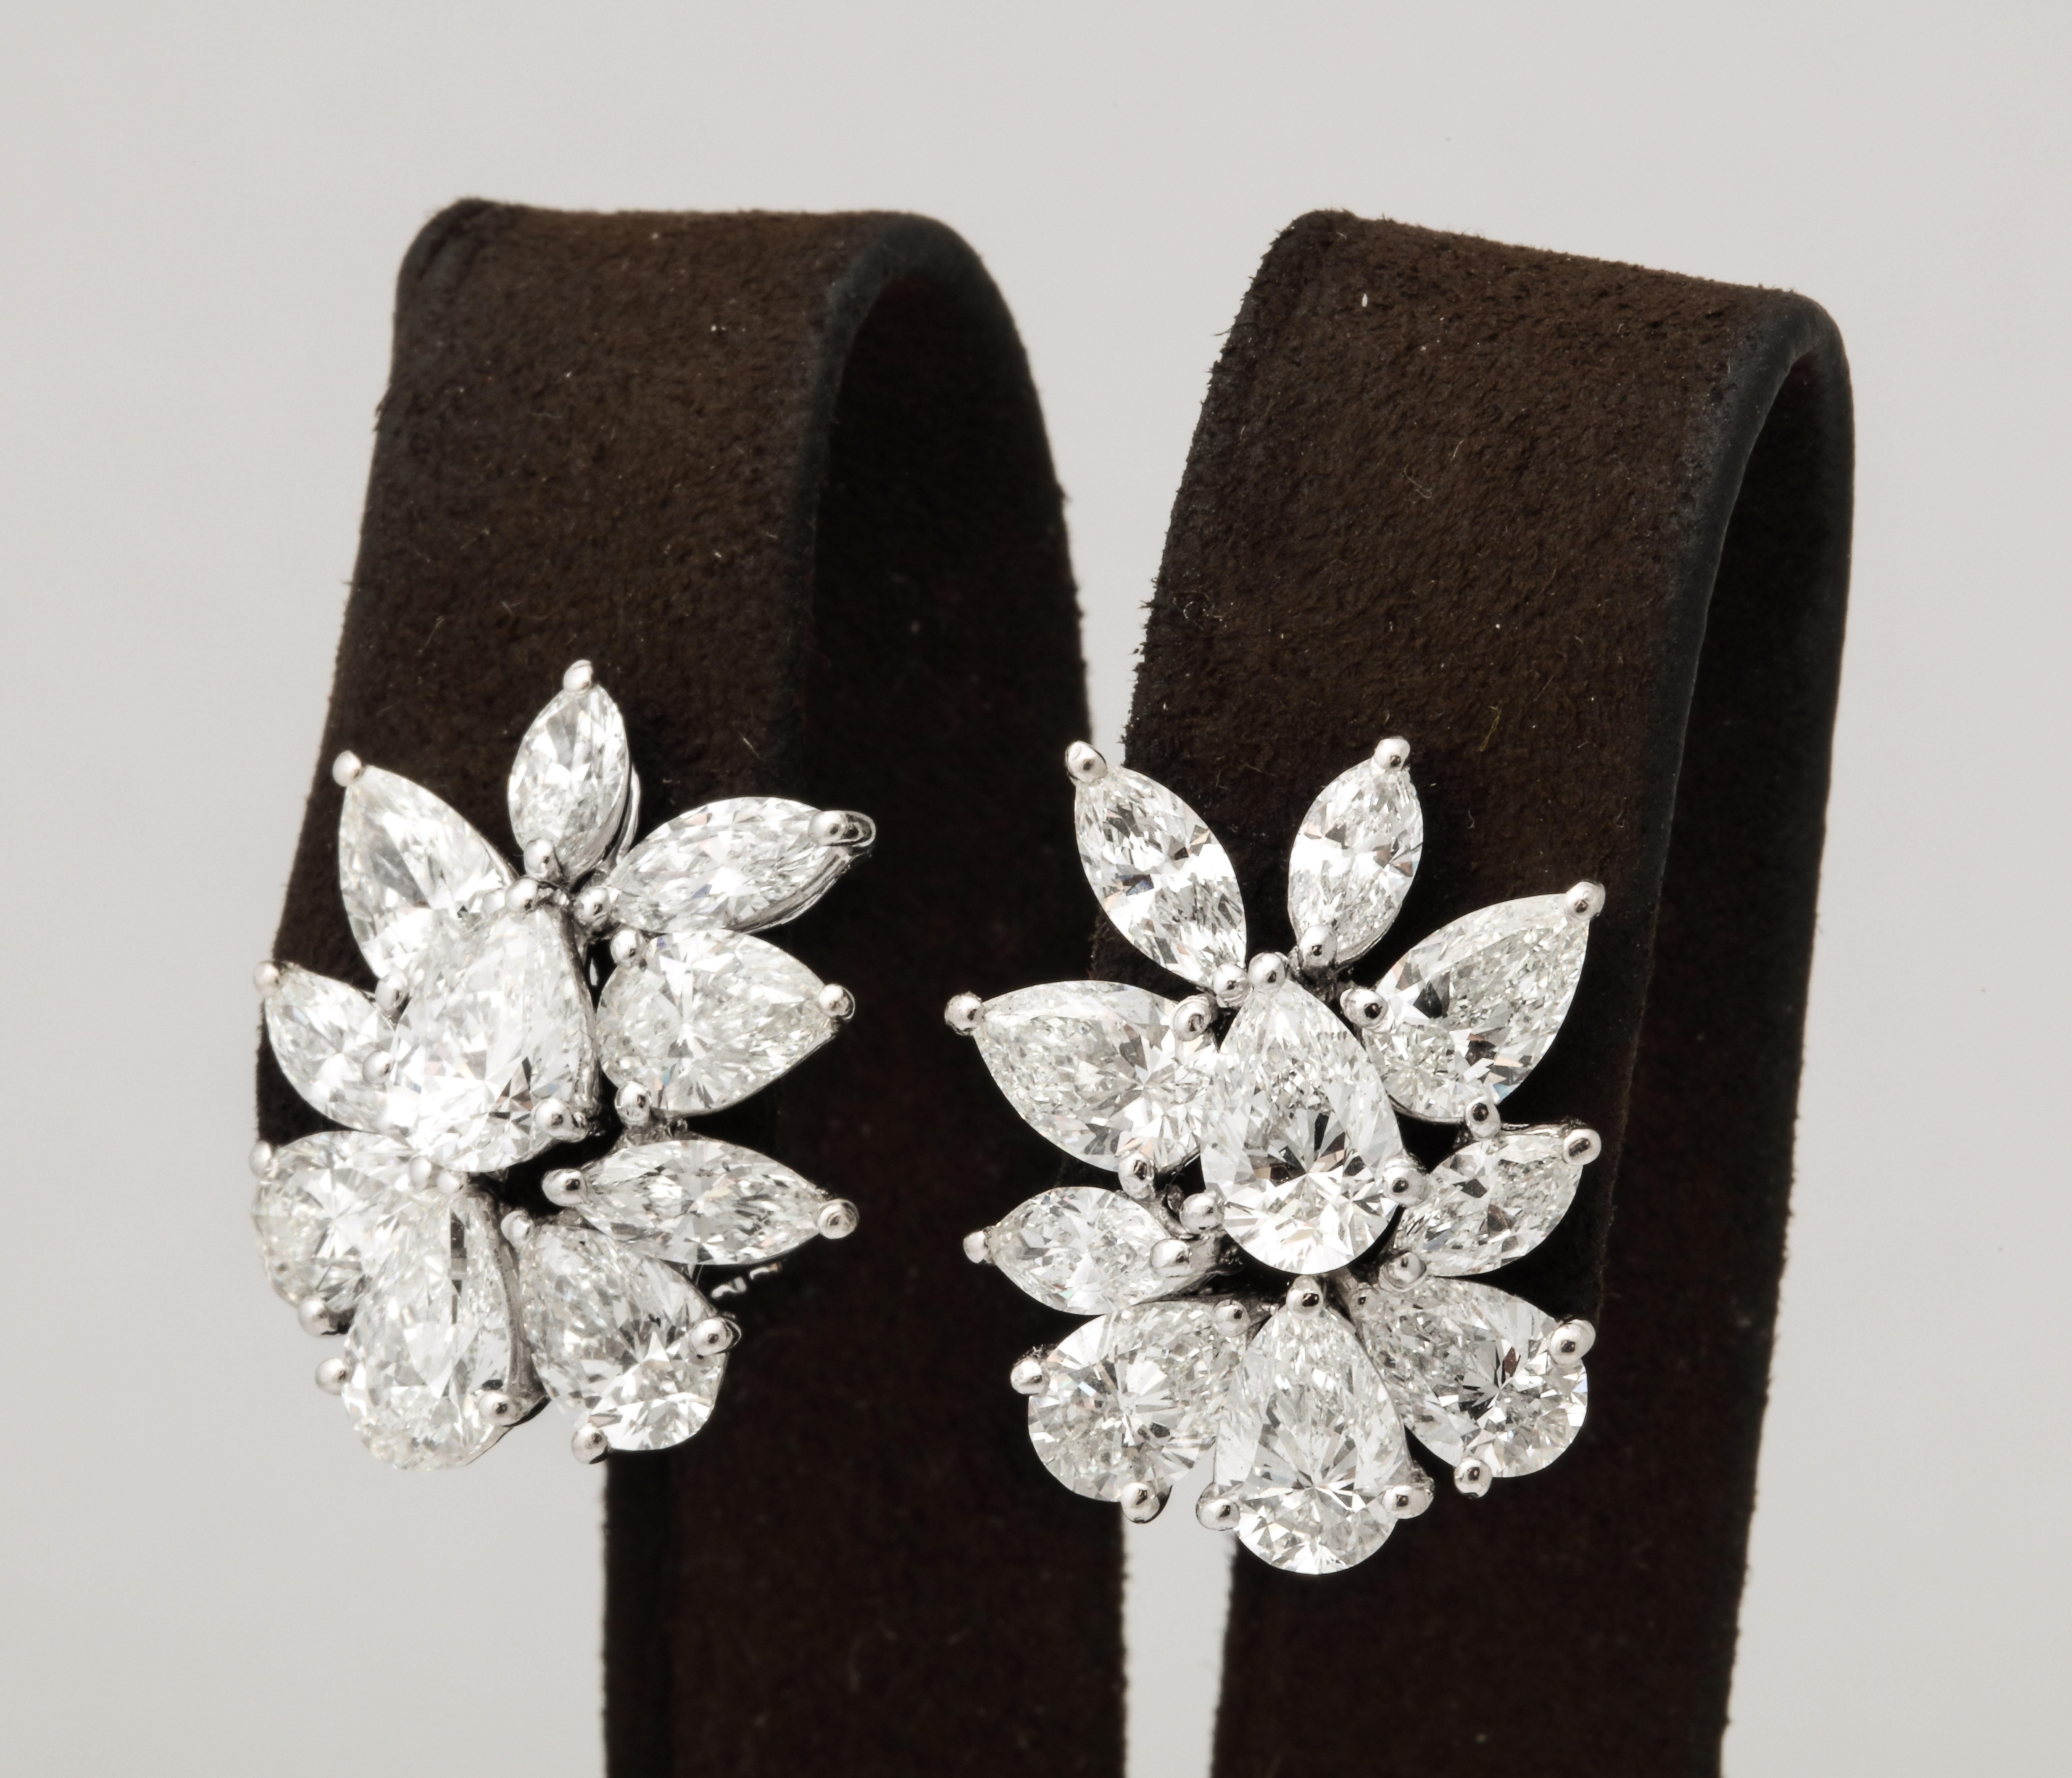 
Une fabuleuse paire de boucles d'oreilles en forme de grappe !

11,39 carats de diamants blancs de forme poire et marquise sertis en platine. 

Un peu moins d'un pouce de longueur - 0,75 pouce de largeur. 

Un aspect et un design importants.